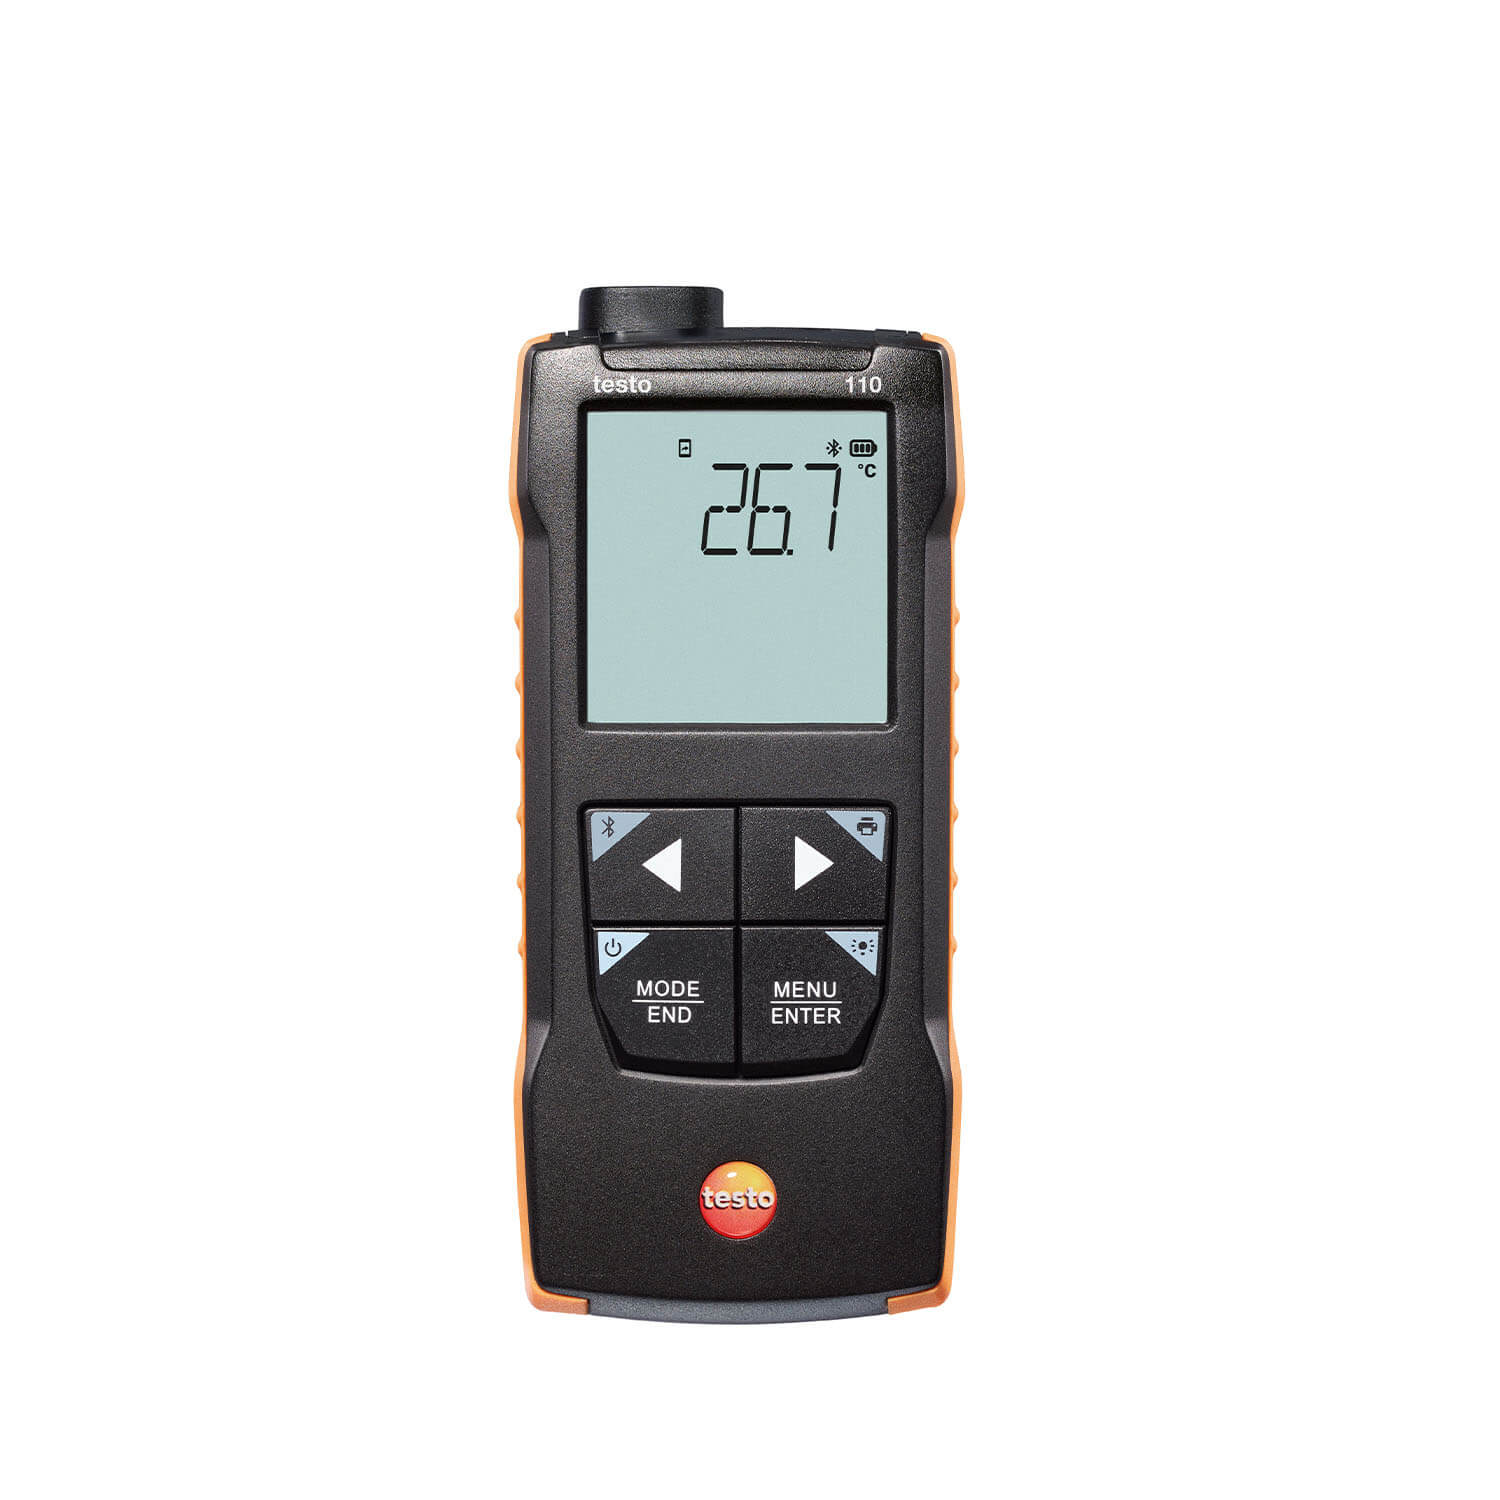 testo 110 – Máy đo nhiệt độ NTC và Pt100 – Kết nối App